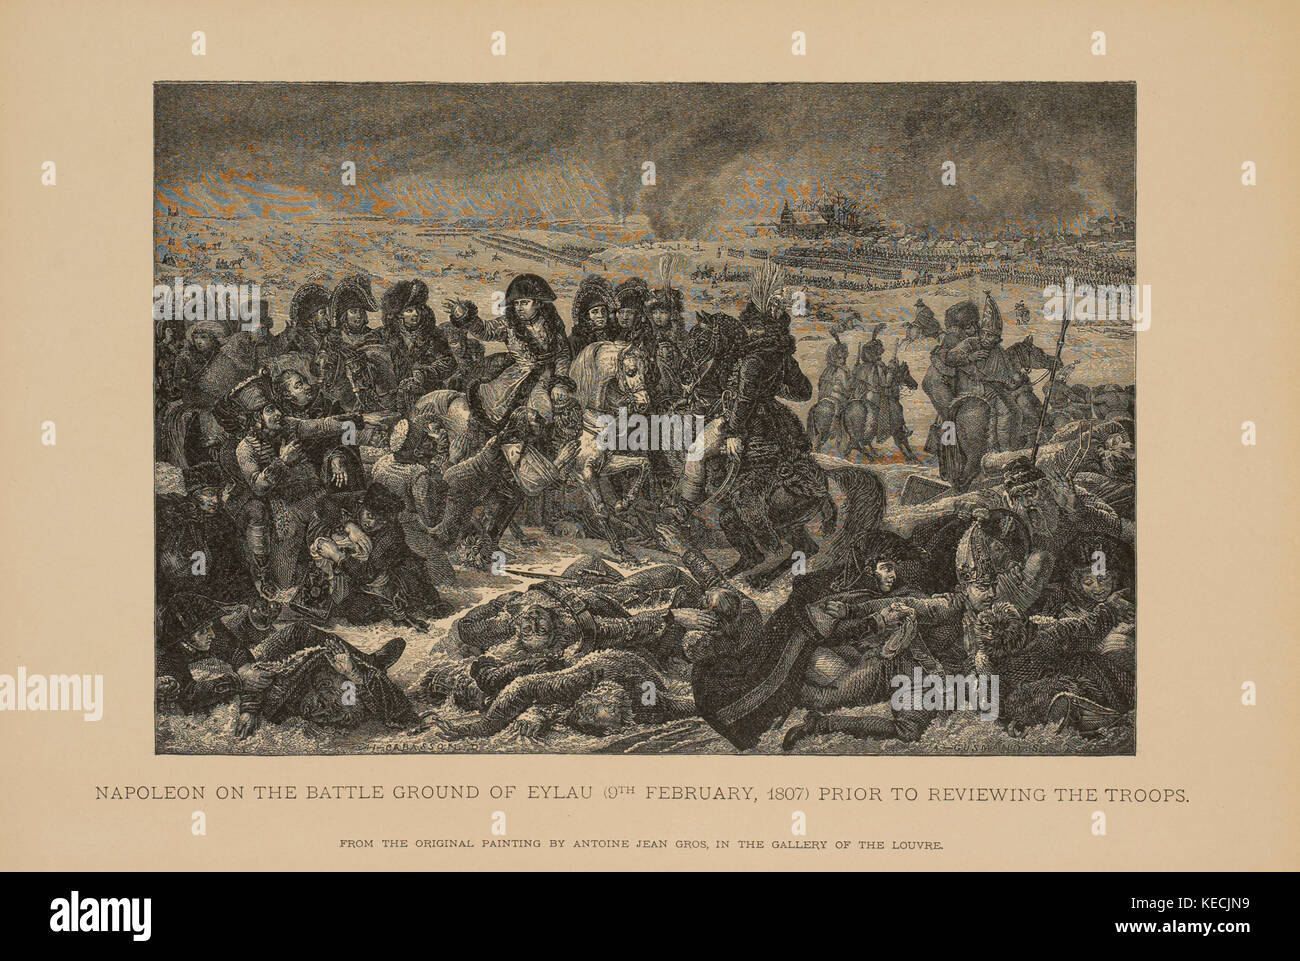 Napoleone sul campo di battaglia di eylau (9 febbraio 1807) prima di riesaminare le truppe, xilografia incisione da dipinto originale di antoine jean gros, 1883 Foto Stock